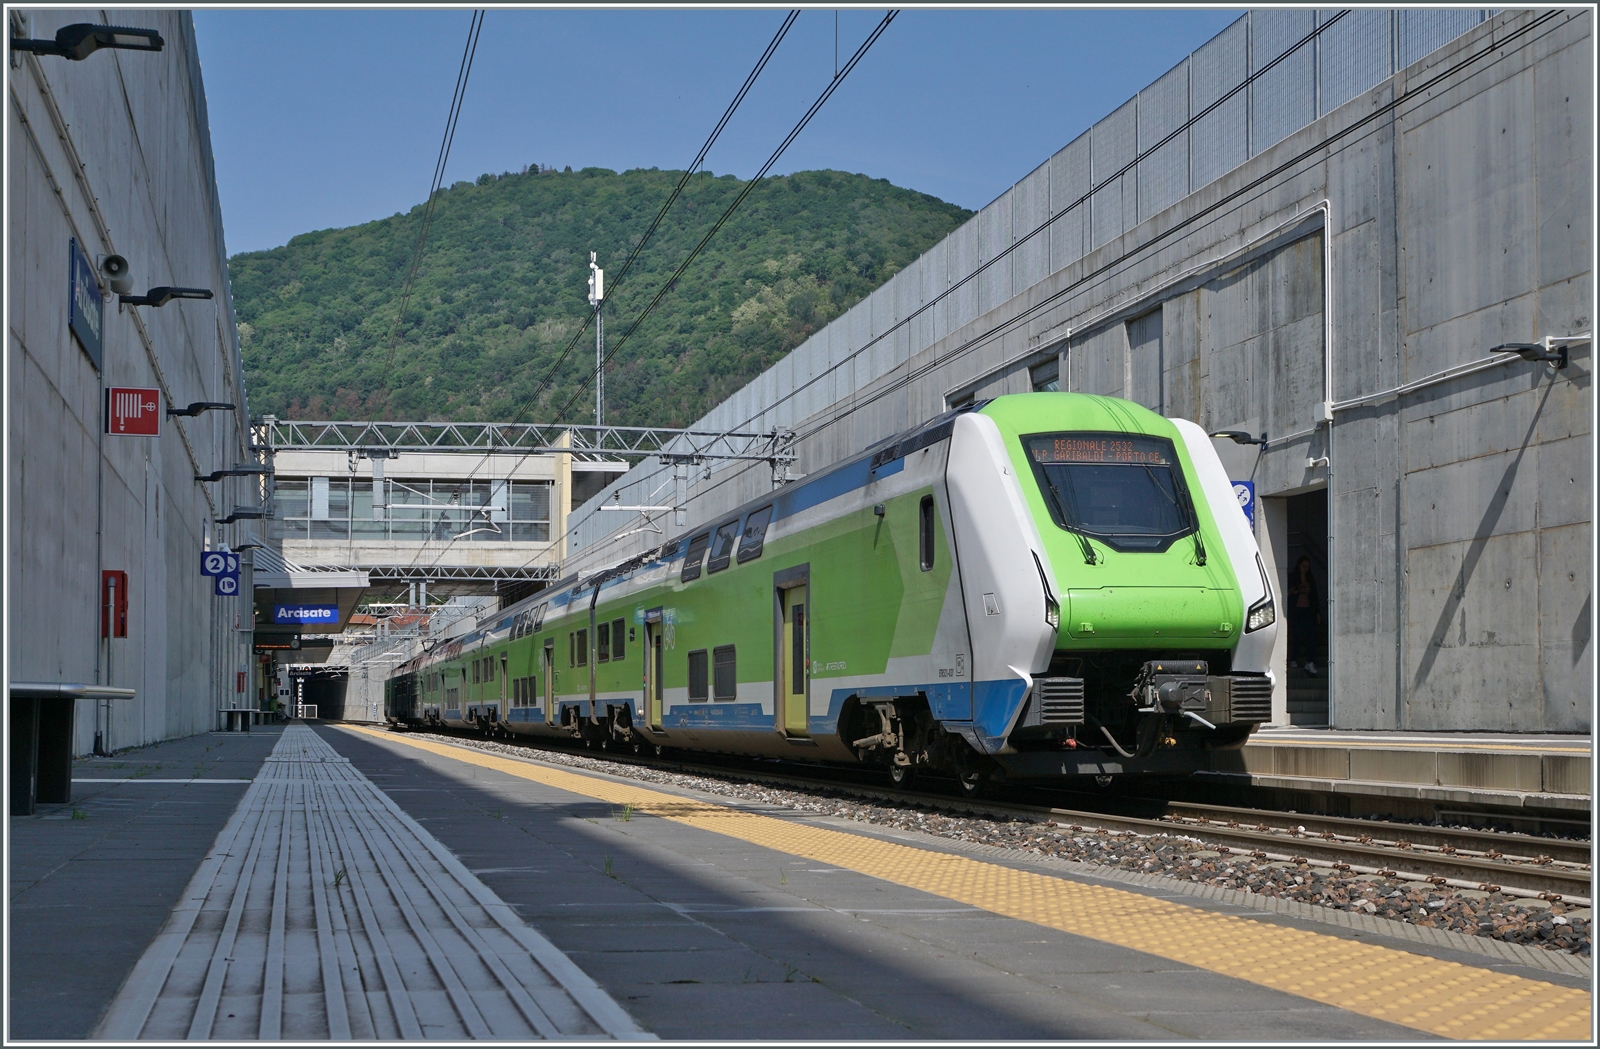 Der Trenord ETR 521 037 ist als RE von Milano Porta Garibaldi auf dem Weg nach Porto Ceresio und ist in Arcisate eingetroffen. In diesem moderne Bahnhof harmoniert der Zug mit der Architektur, ob dies gefällt, ist dann eine Geschmacksfrage. 

23. Mai 2023